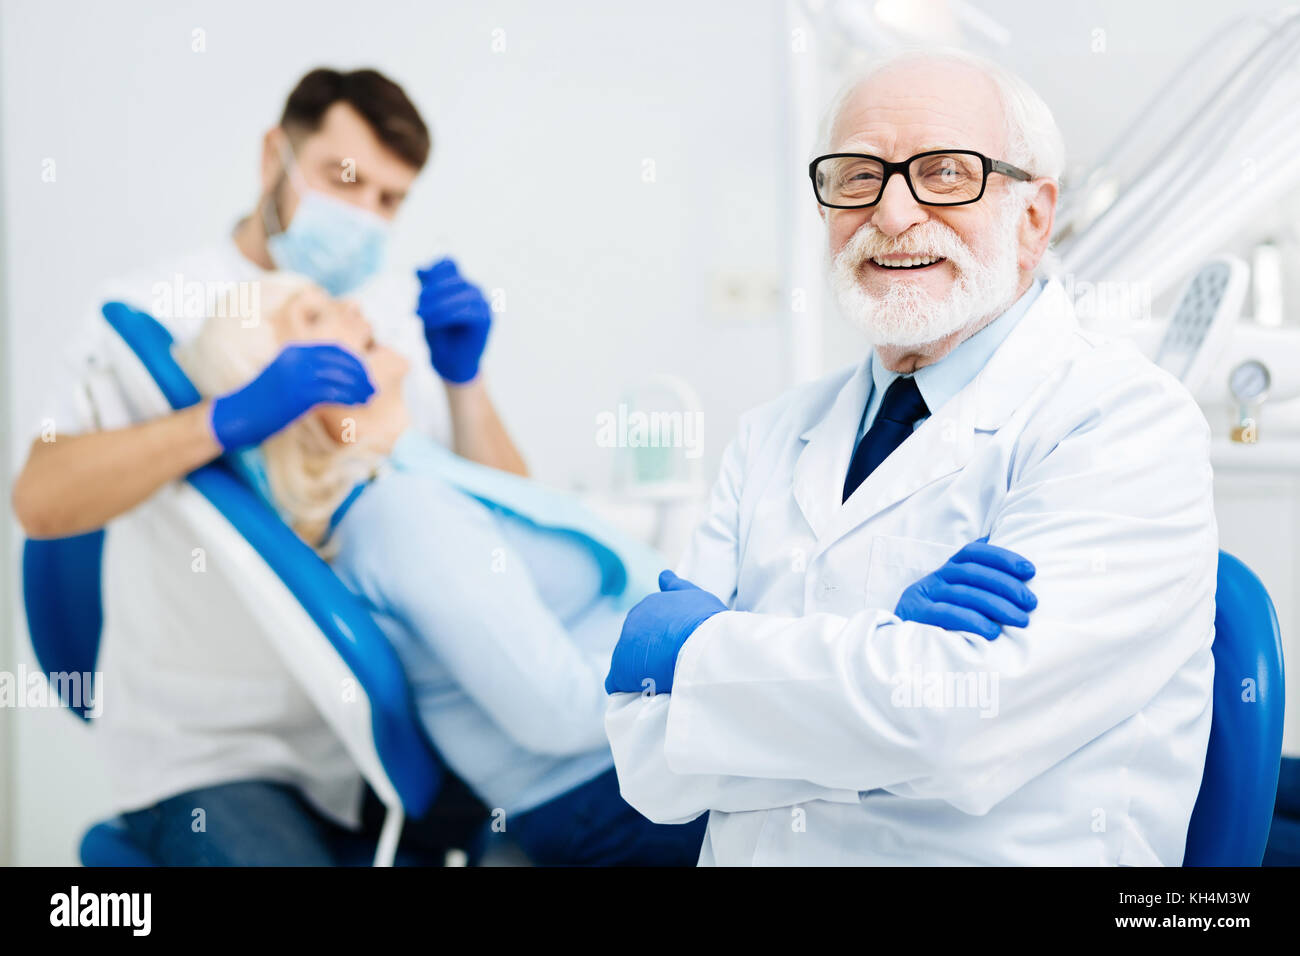 Oeil de joyeux heureux stomatologist Banque D'Images